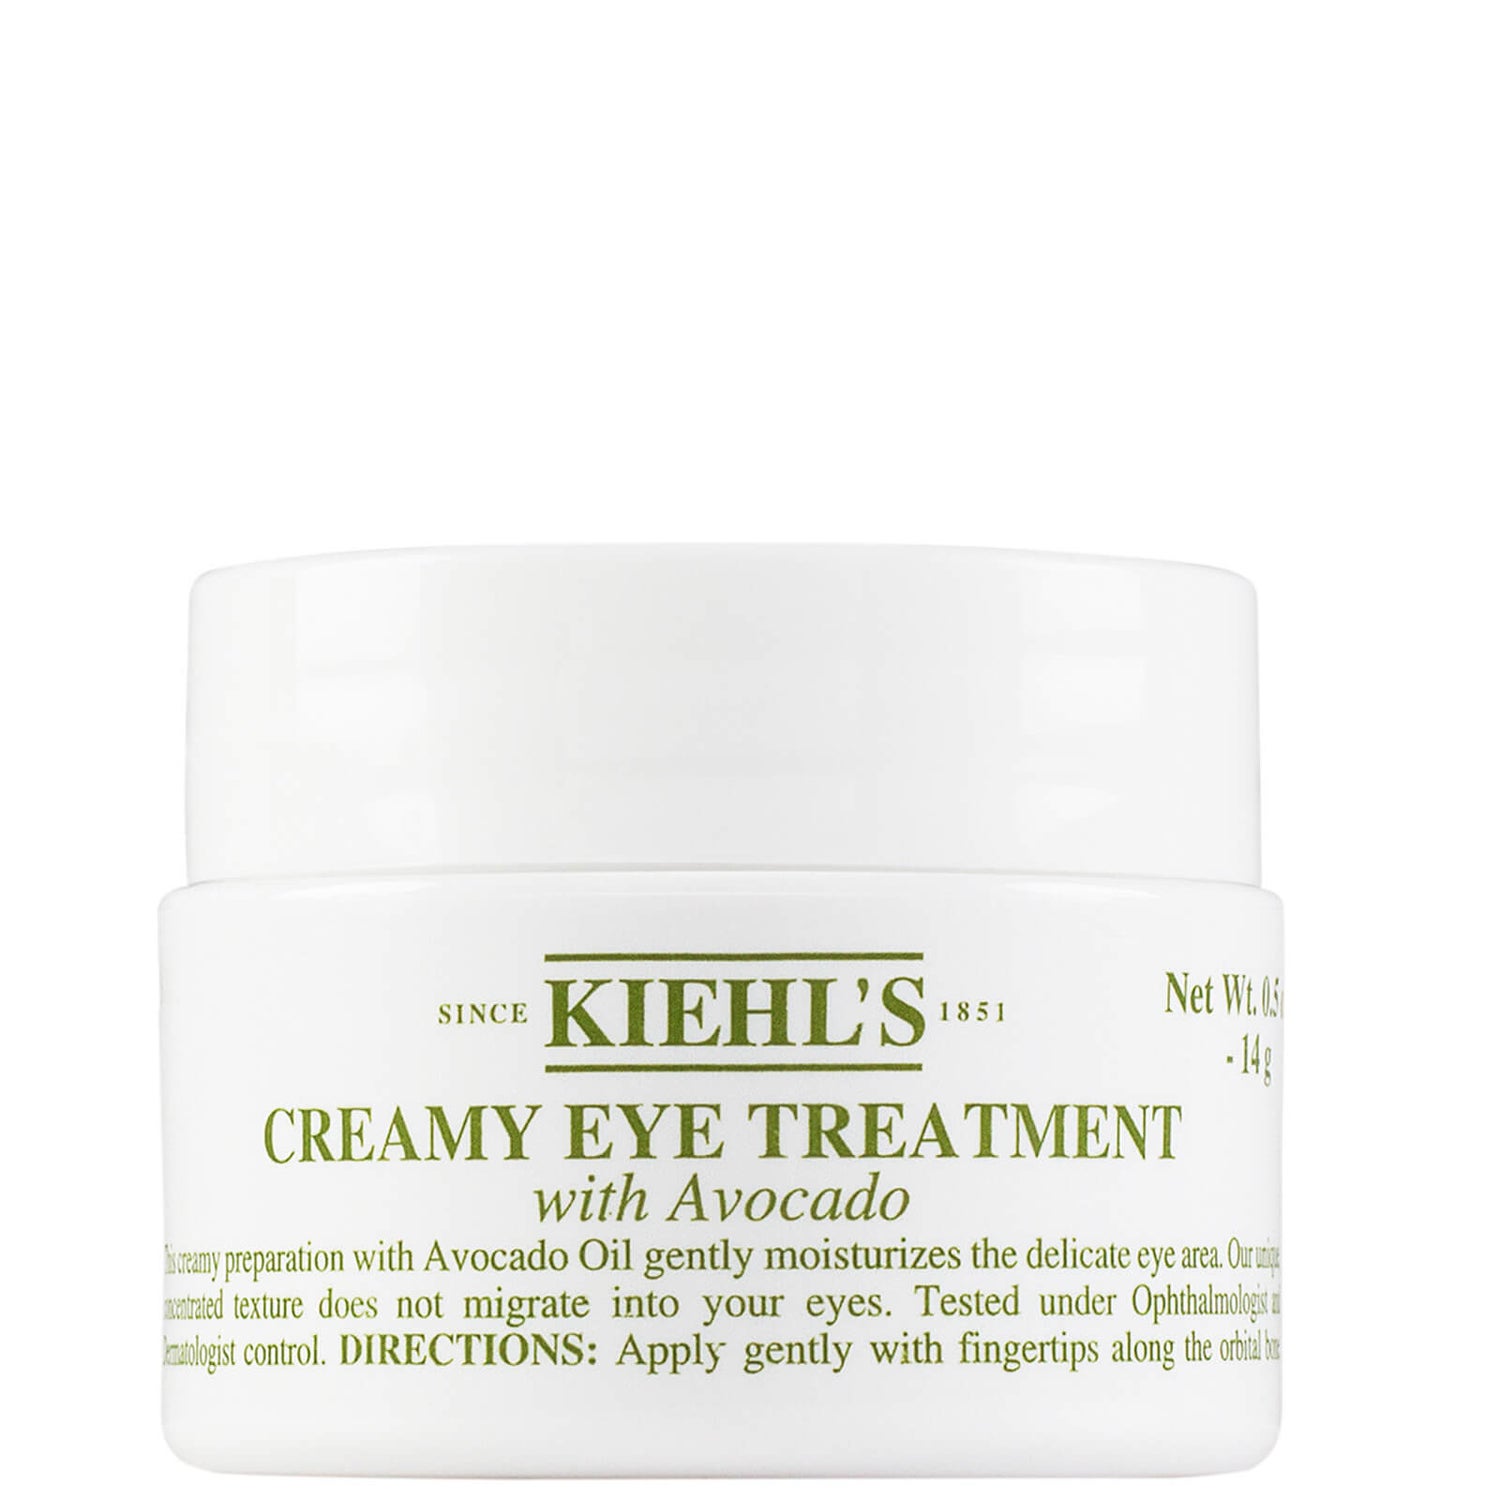 Tratamiento cremoso de ojos con aguacate de Kiehl's (varios tamaños)